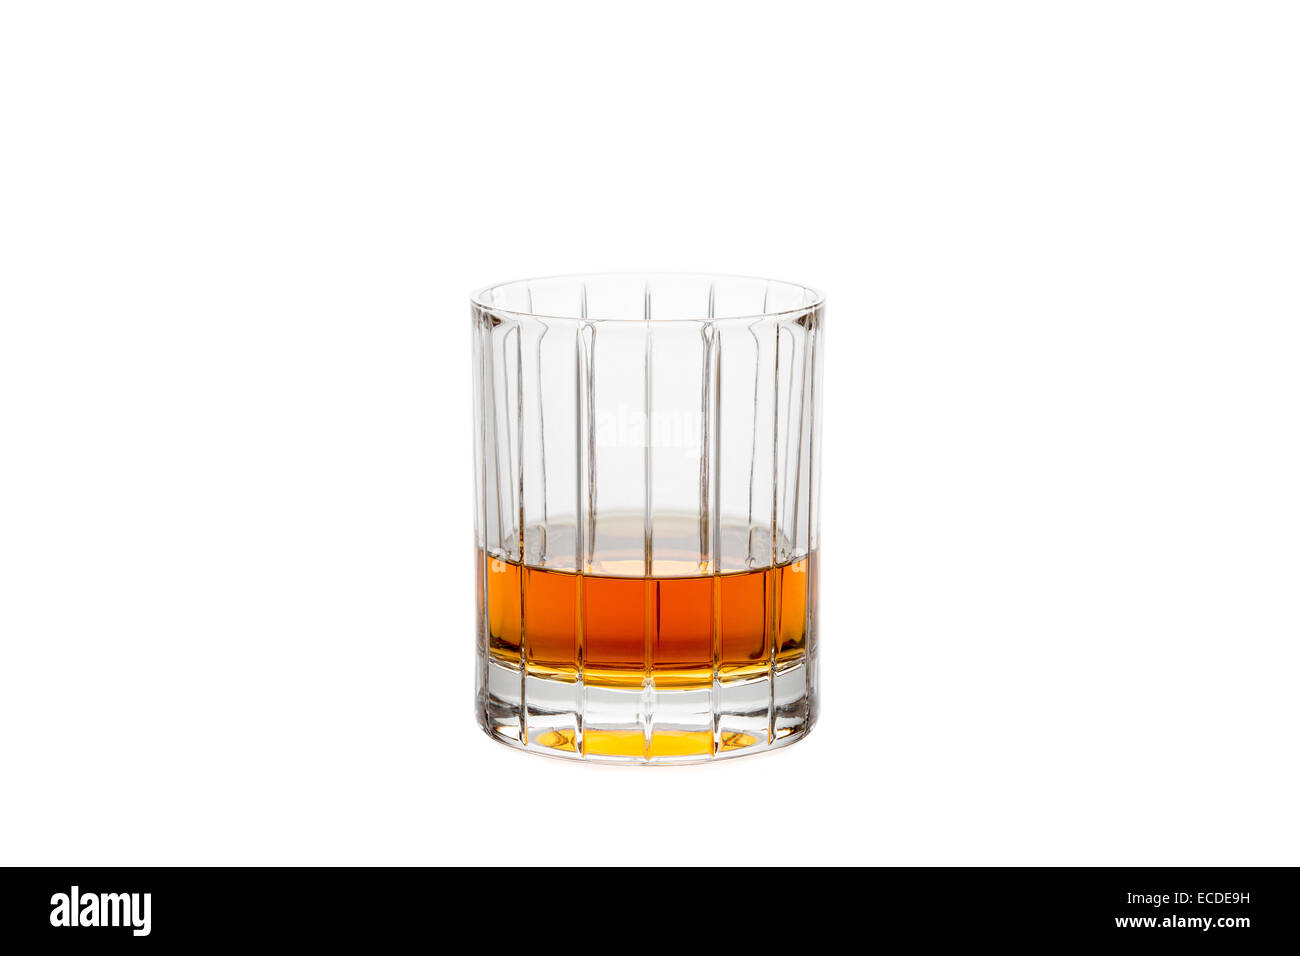 Kristallglas mit Whisky, Bourbon oder anderen bernsteinfarbenen Likör.  Isoliert auf weiss. Stockfoto